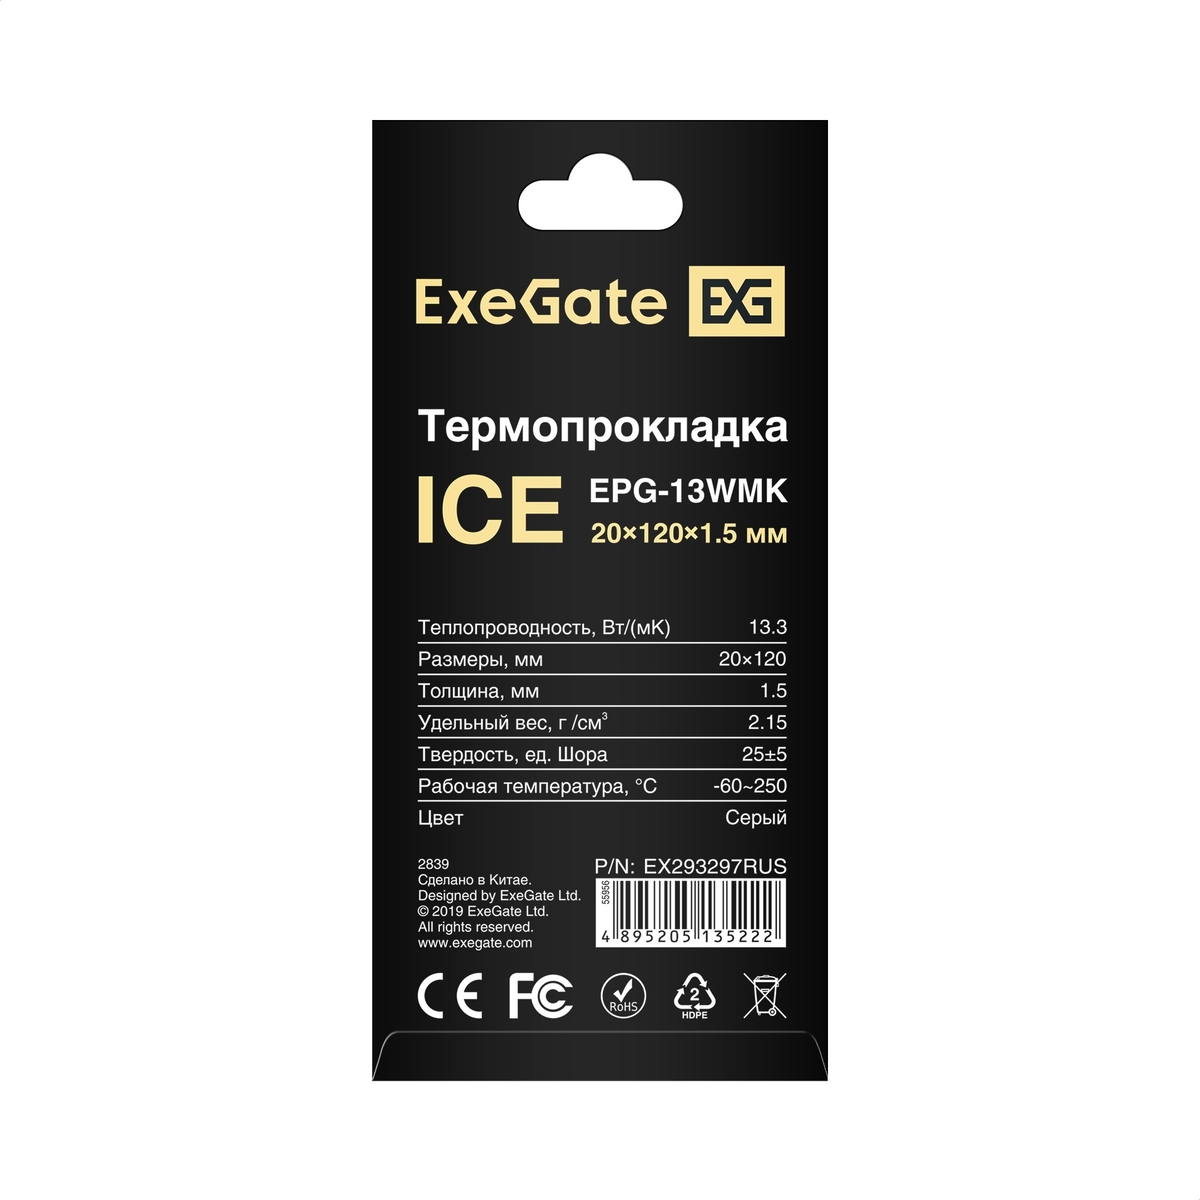 Thermal Pad ExeGate Ice EPG-13WMK 20x120x1.5